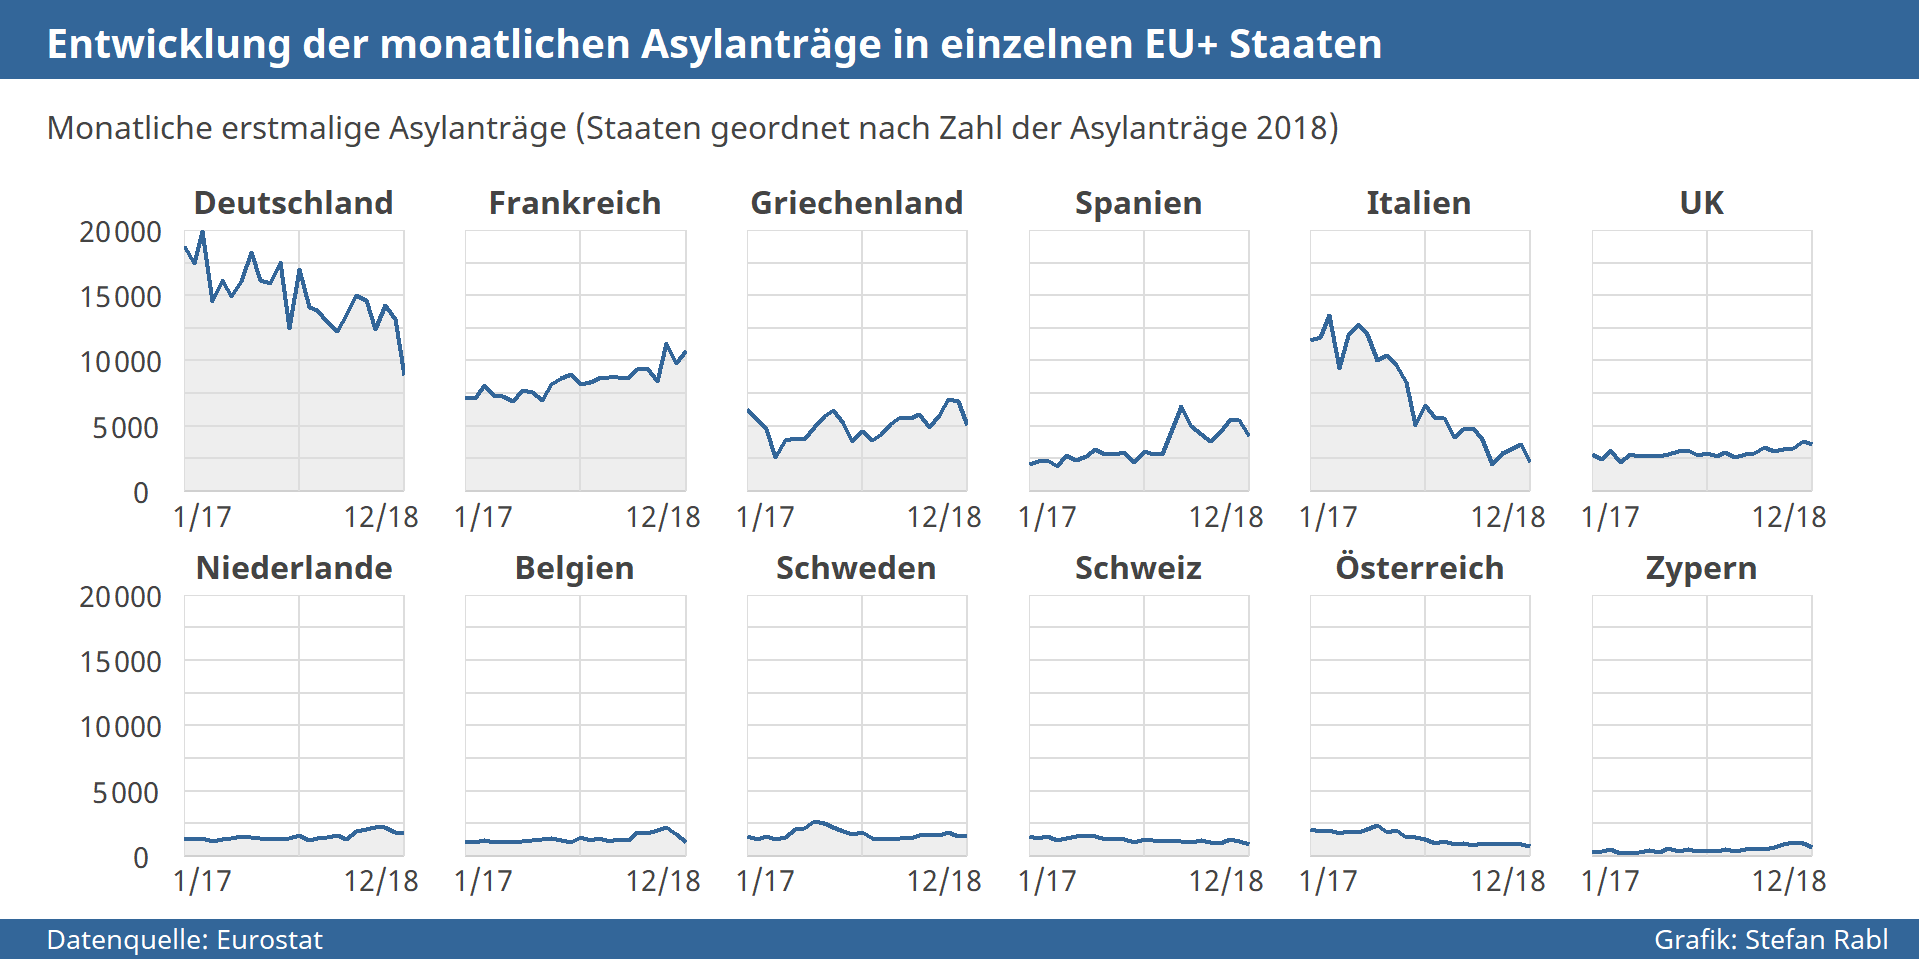 Grafik: Entwicklung der monatlichen Asylantragszahlen in einzelnen EU+ Staaten 2018